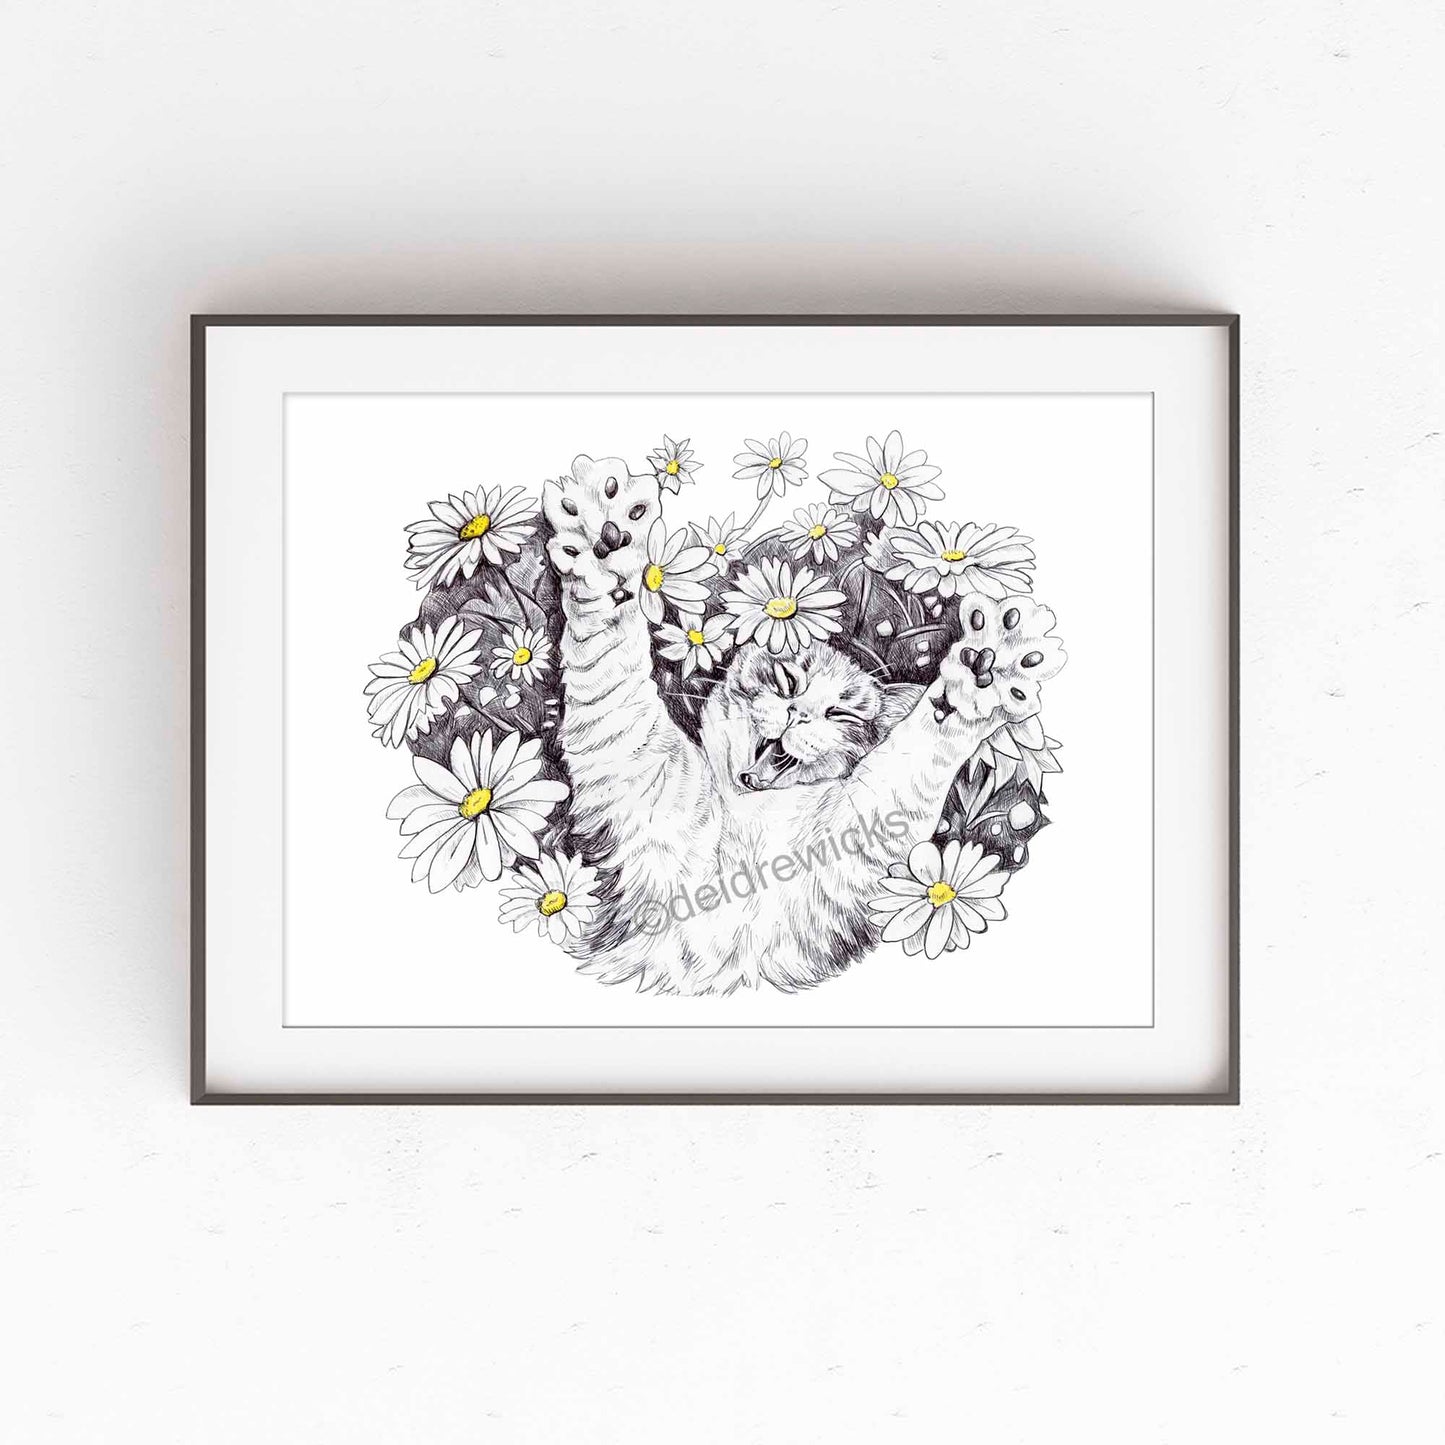 Framed example of cat lying in daisies. Ballpoint pen art by Deidre Wicks